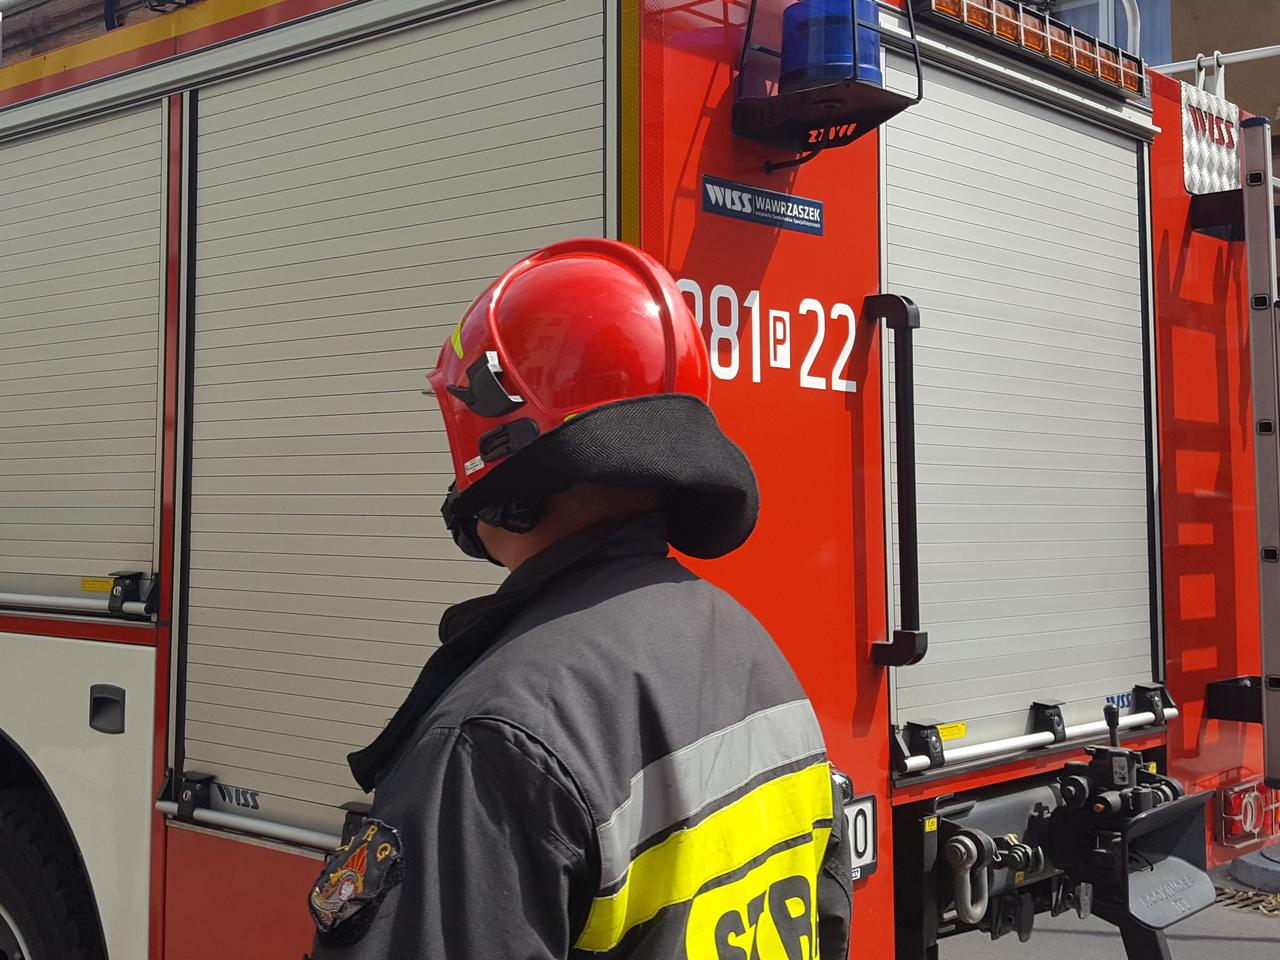 Płonie nielegalne składowisko chemikaliów w Kędzierzynie - Koźlu. Na miejscu 70 strażaków!